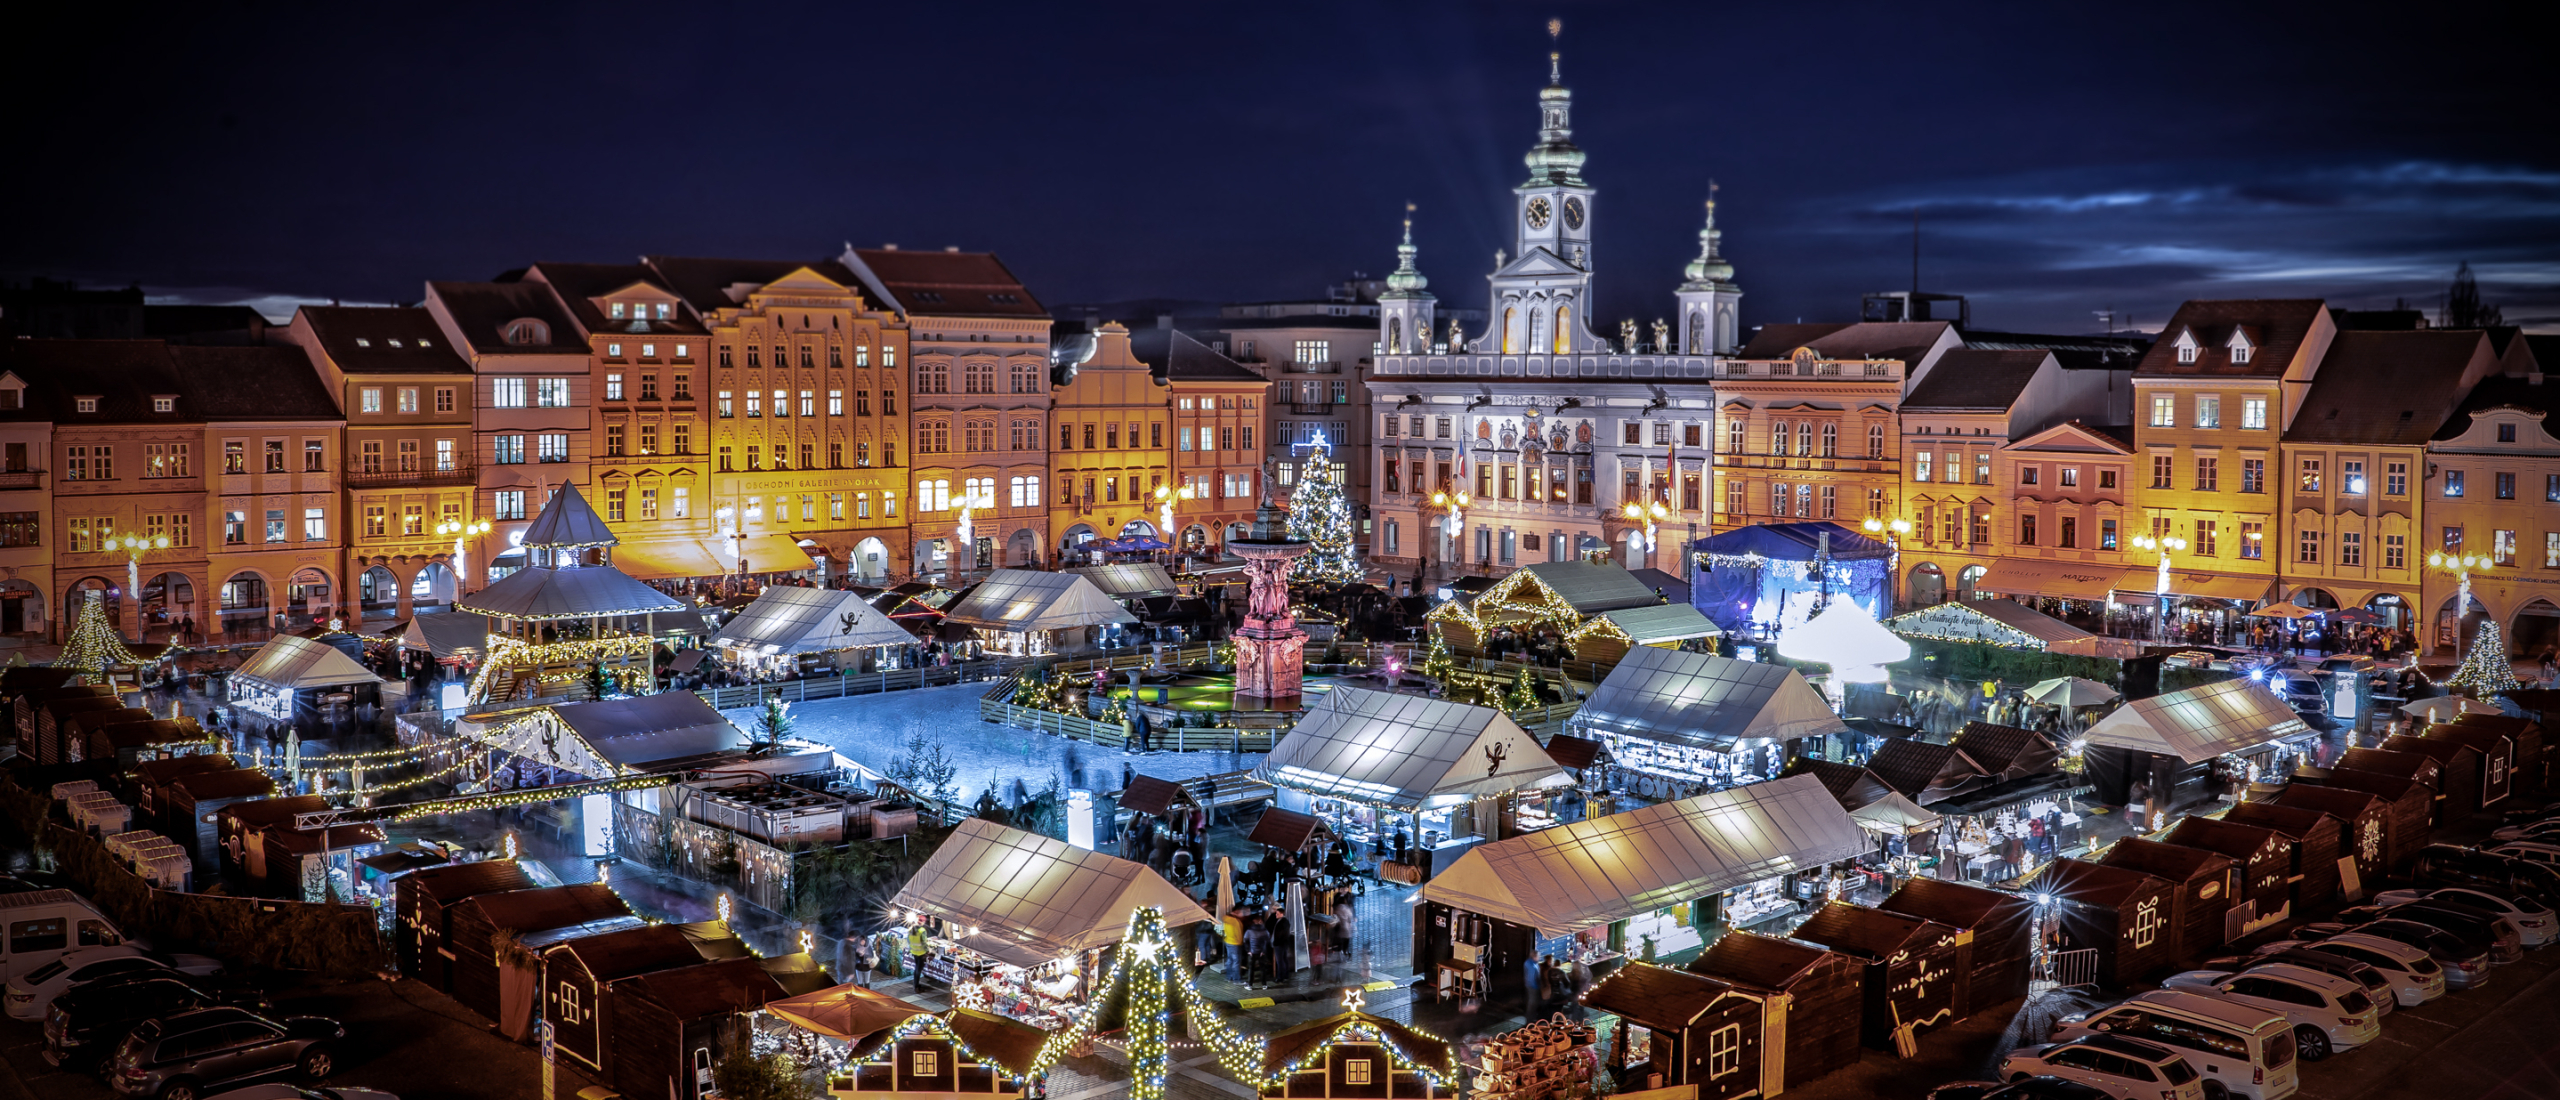 De mooiste kerstmarkten van Tsjechië